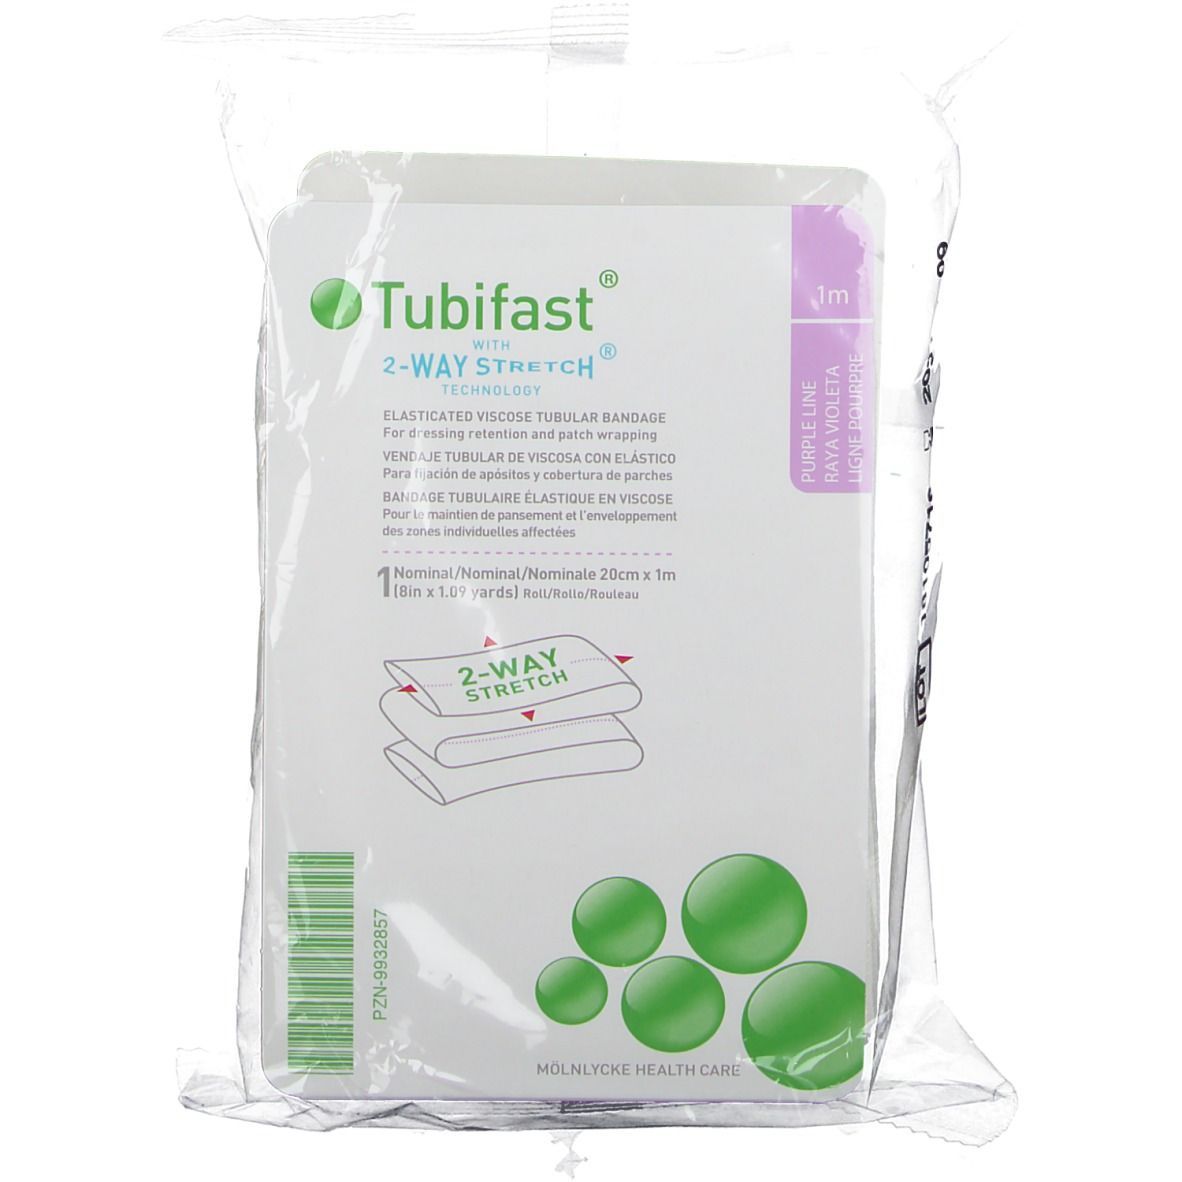 Tubifast 2-Way Stretch 25 cm x 1 m